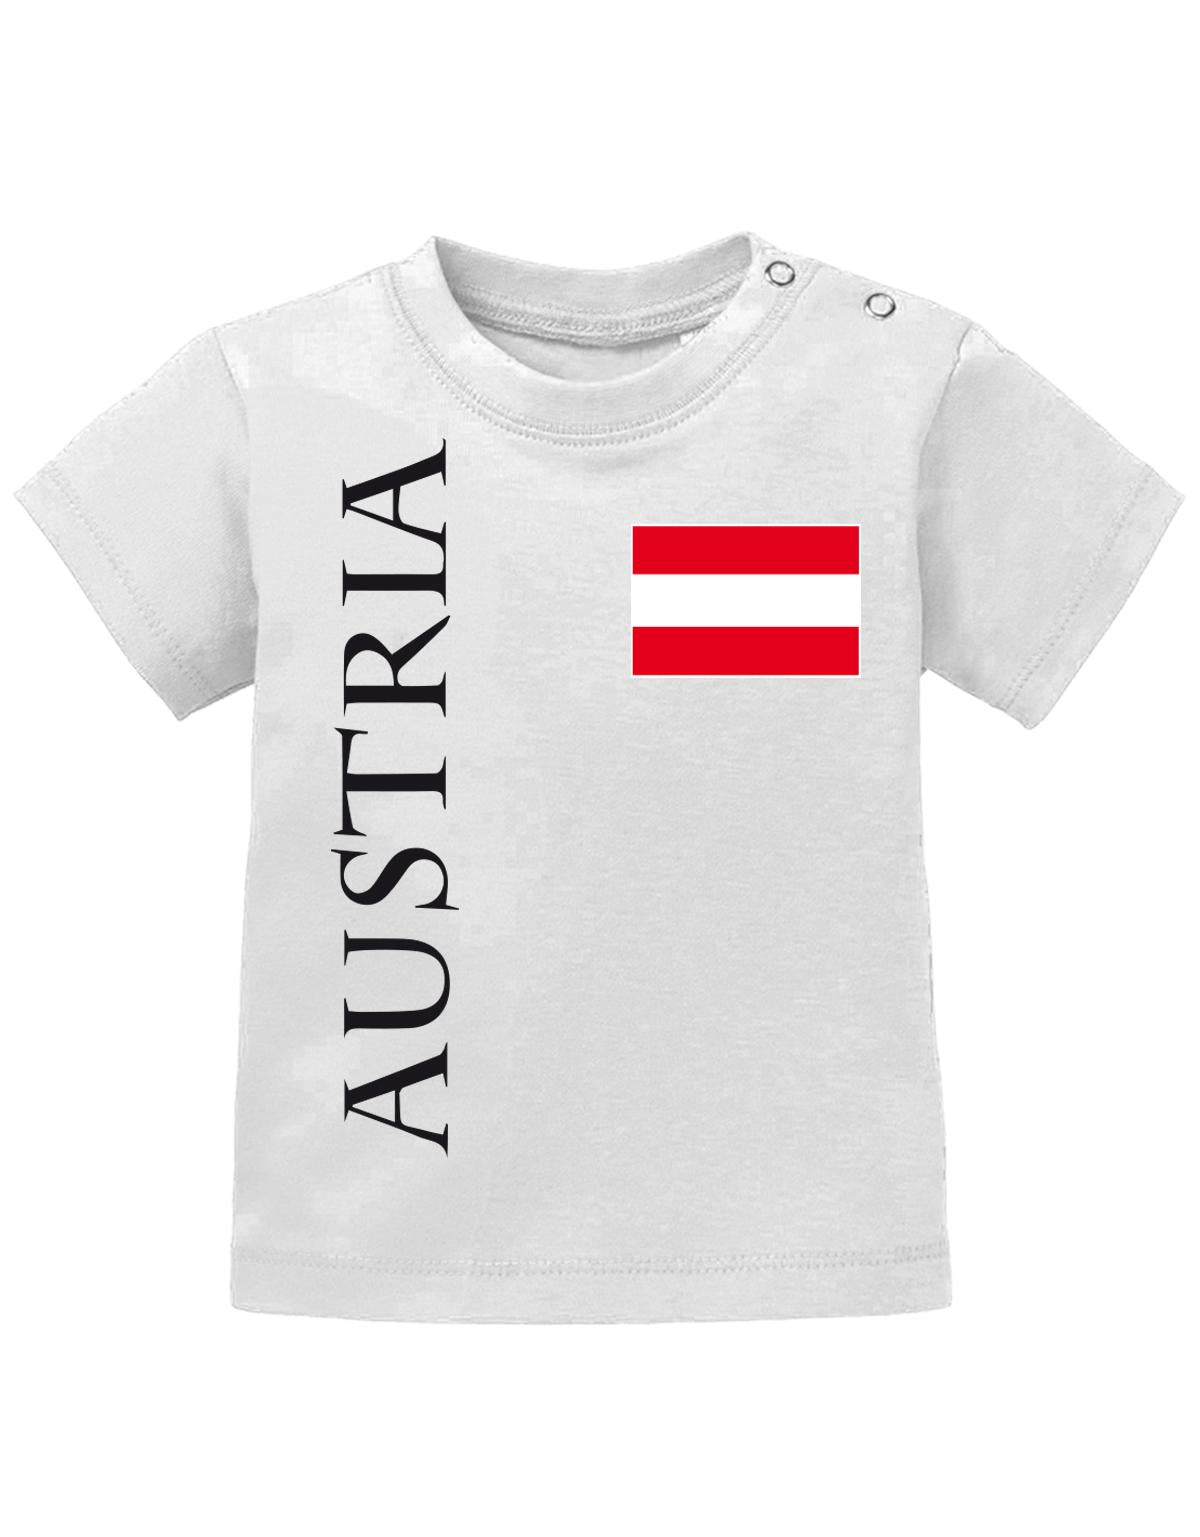 Österreich T Shirt für Junge und Mädchen. Österreich Fahne am Herzen Austria als Schriftzug. Weiss